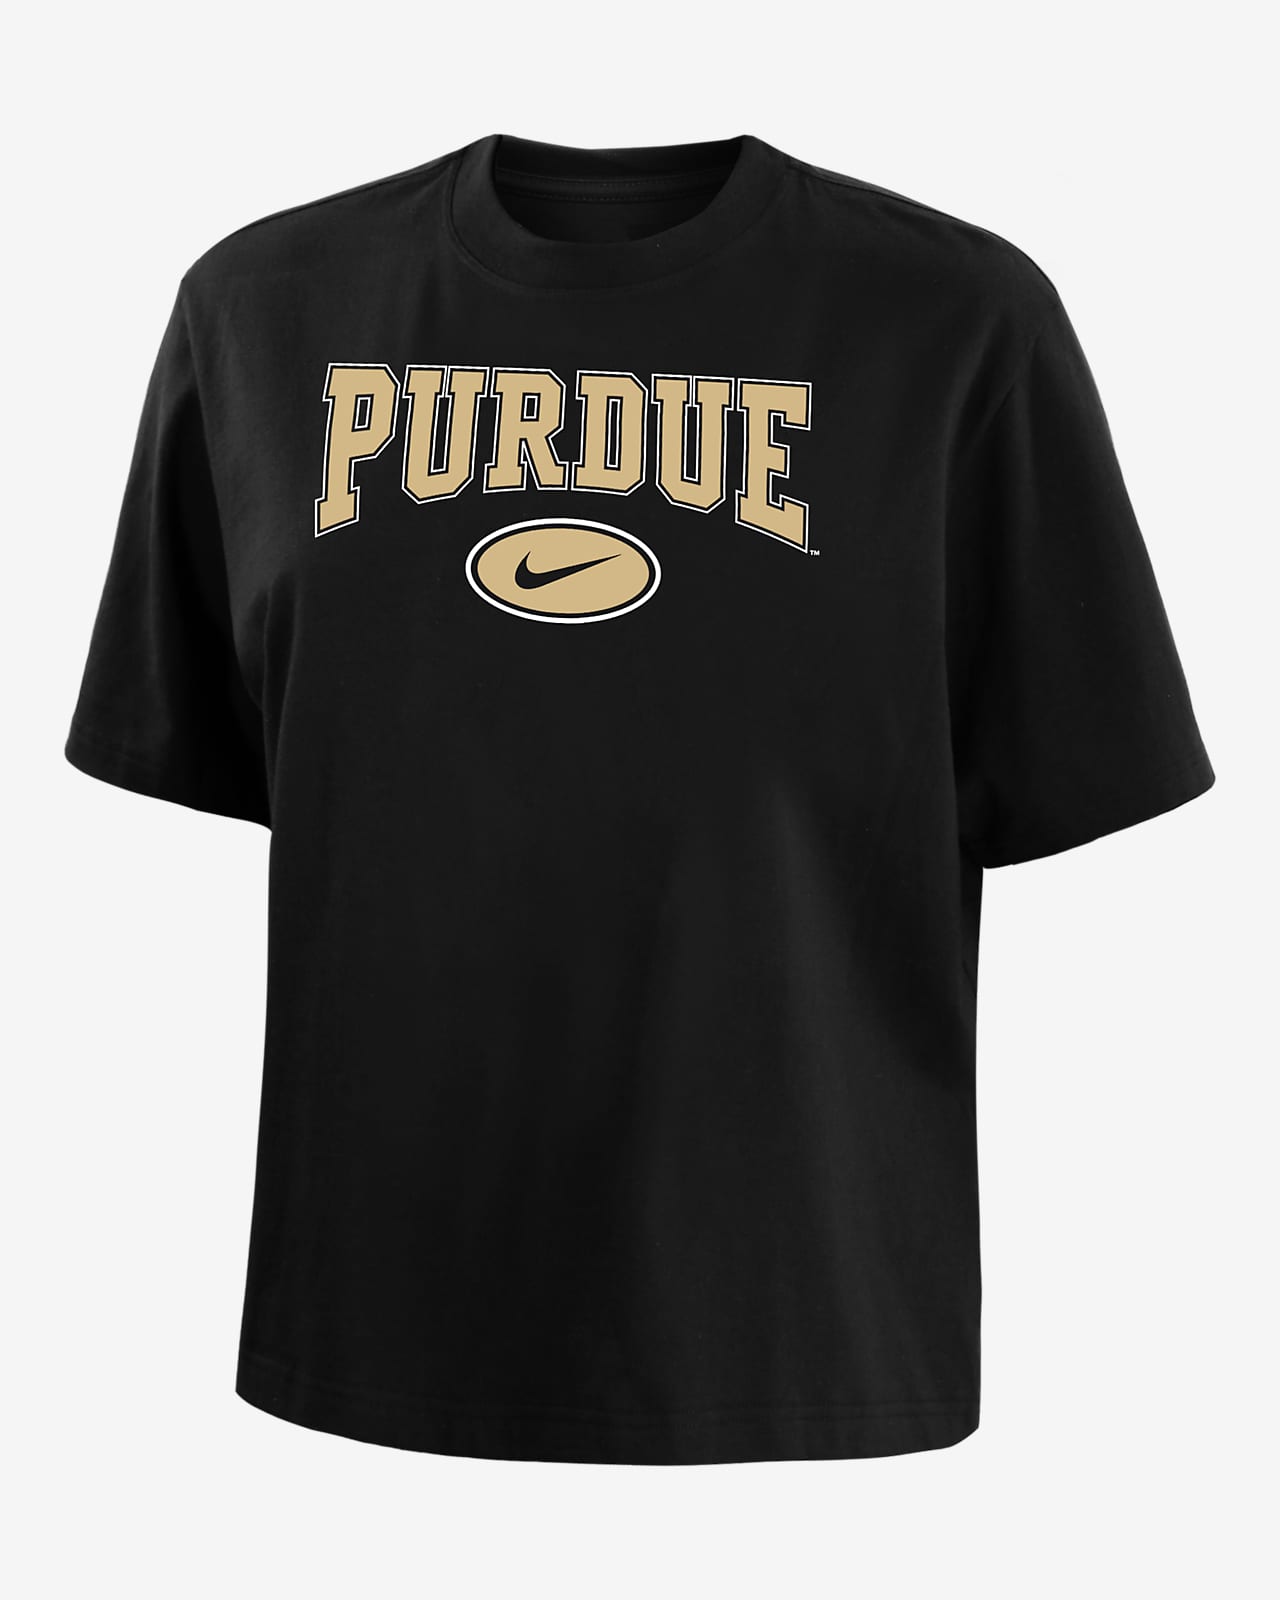 Purdue Women's Nike College Boxy T-Shirt